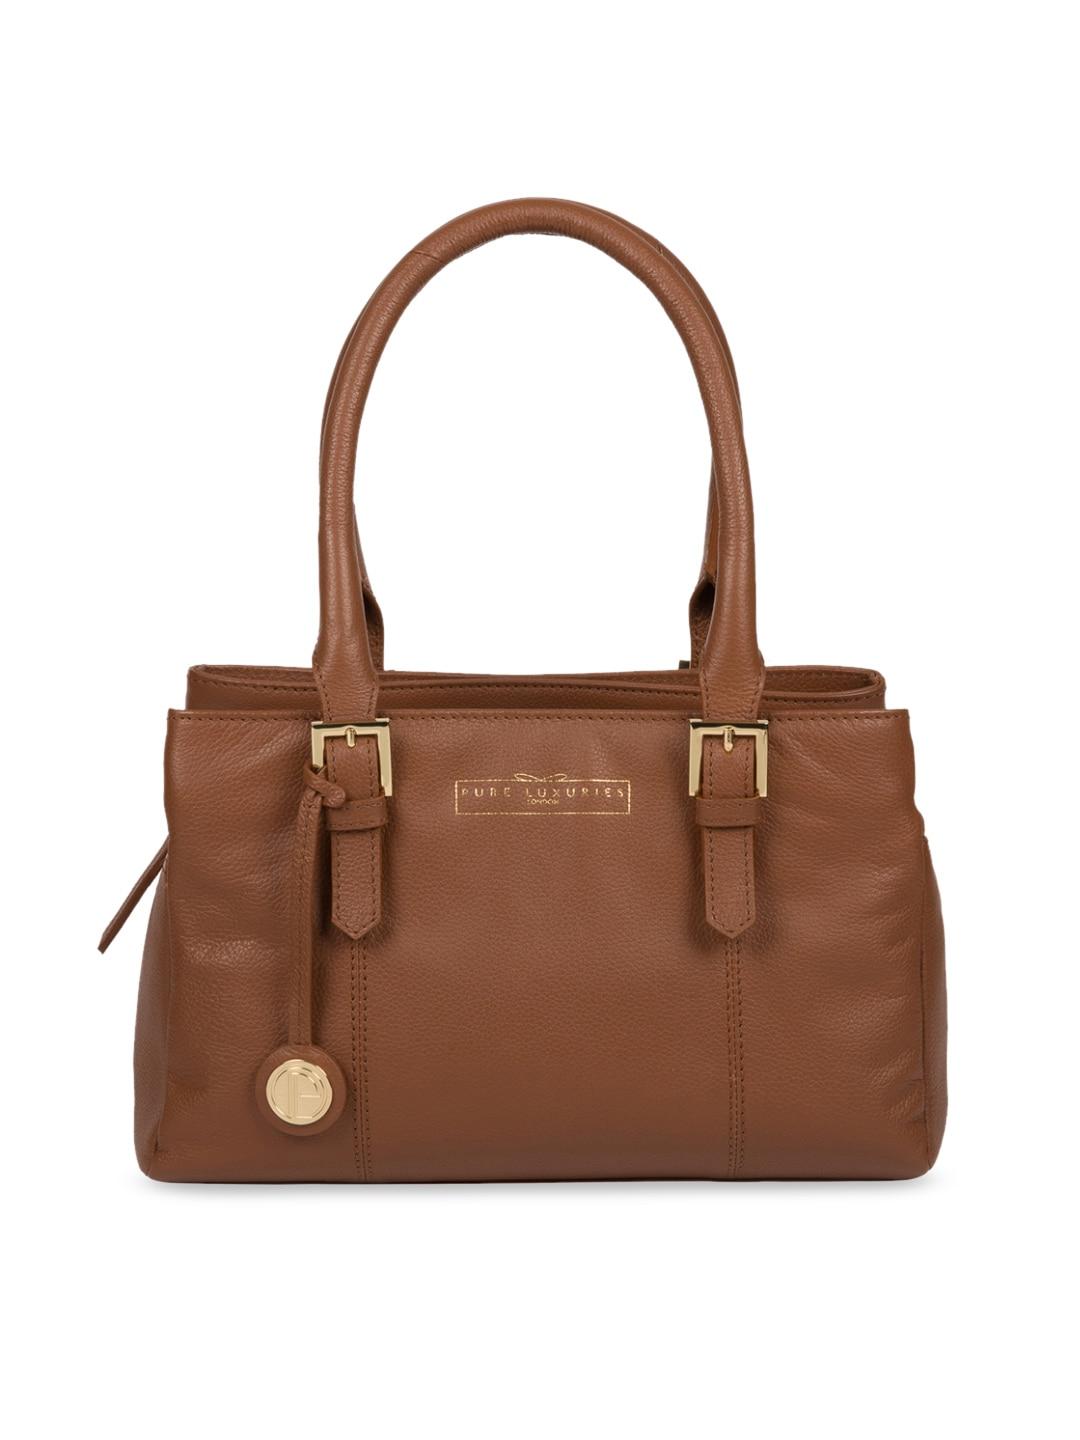 PURE LUXURIES LONDON Women Tan Brown Solid Genuine Leather Astley Handbag